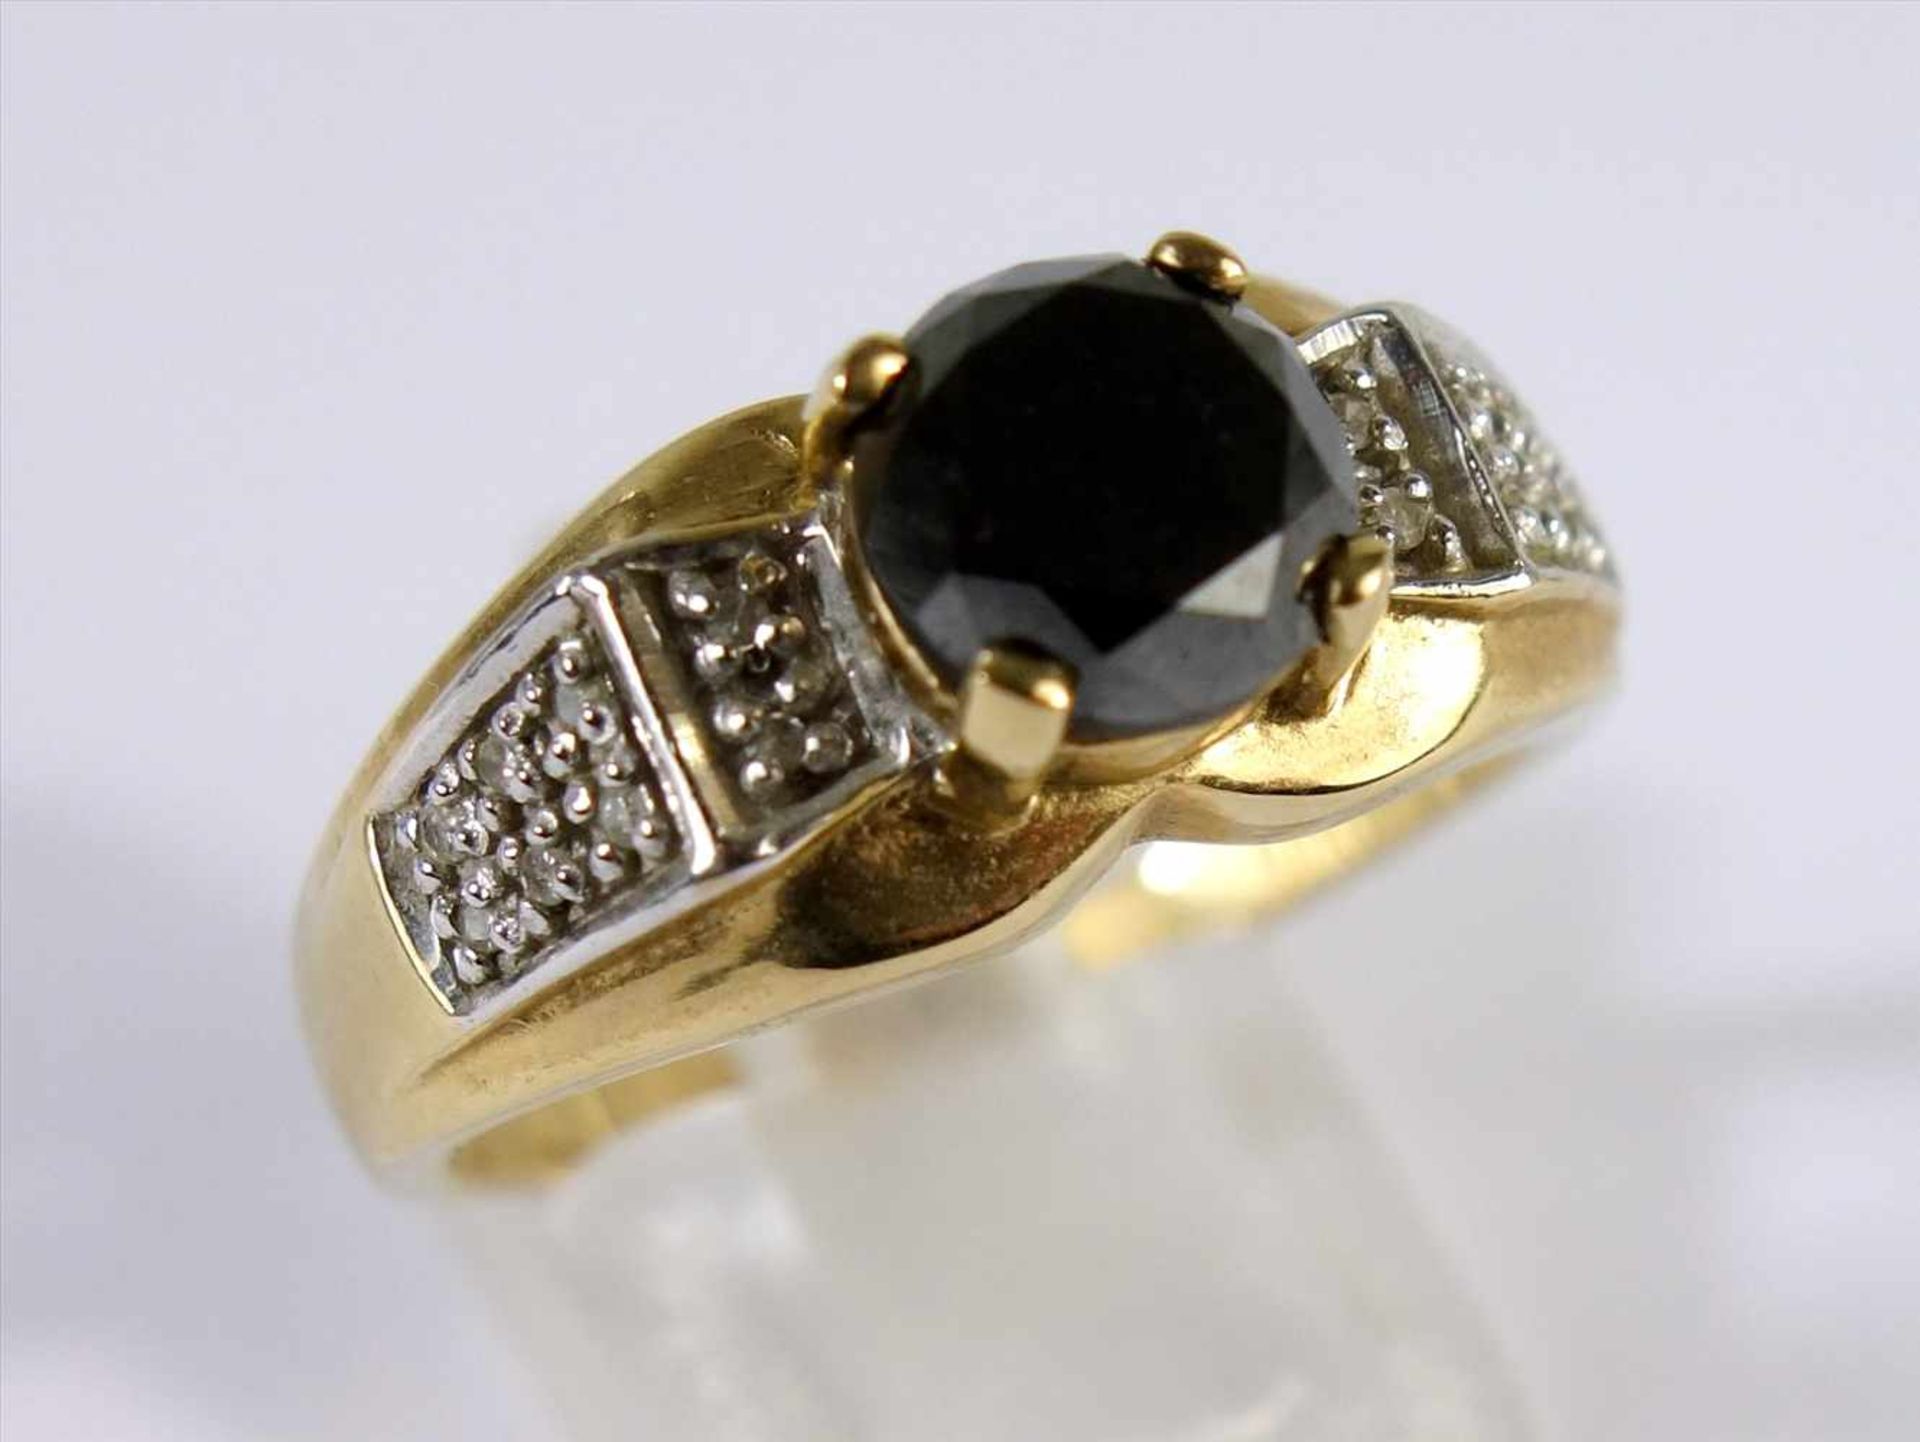 Schwarzer Diamant-Ring, 375er Gold, mit Echtheitszertifikat, Gesamt-Gew.5,12g, afrikanischer,